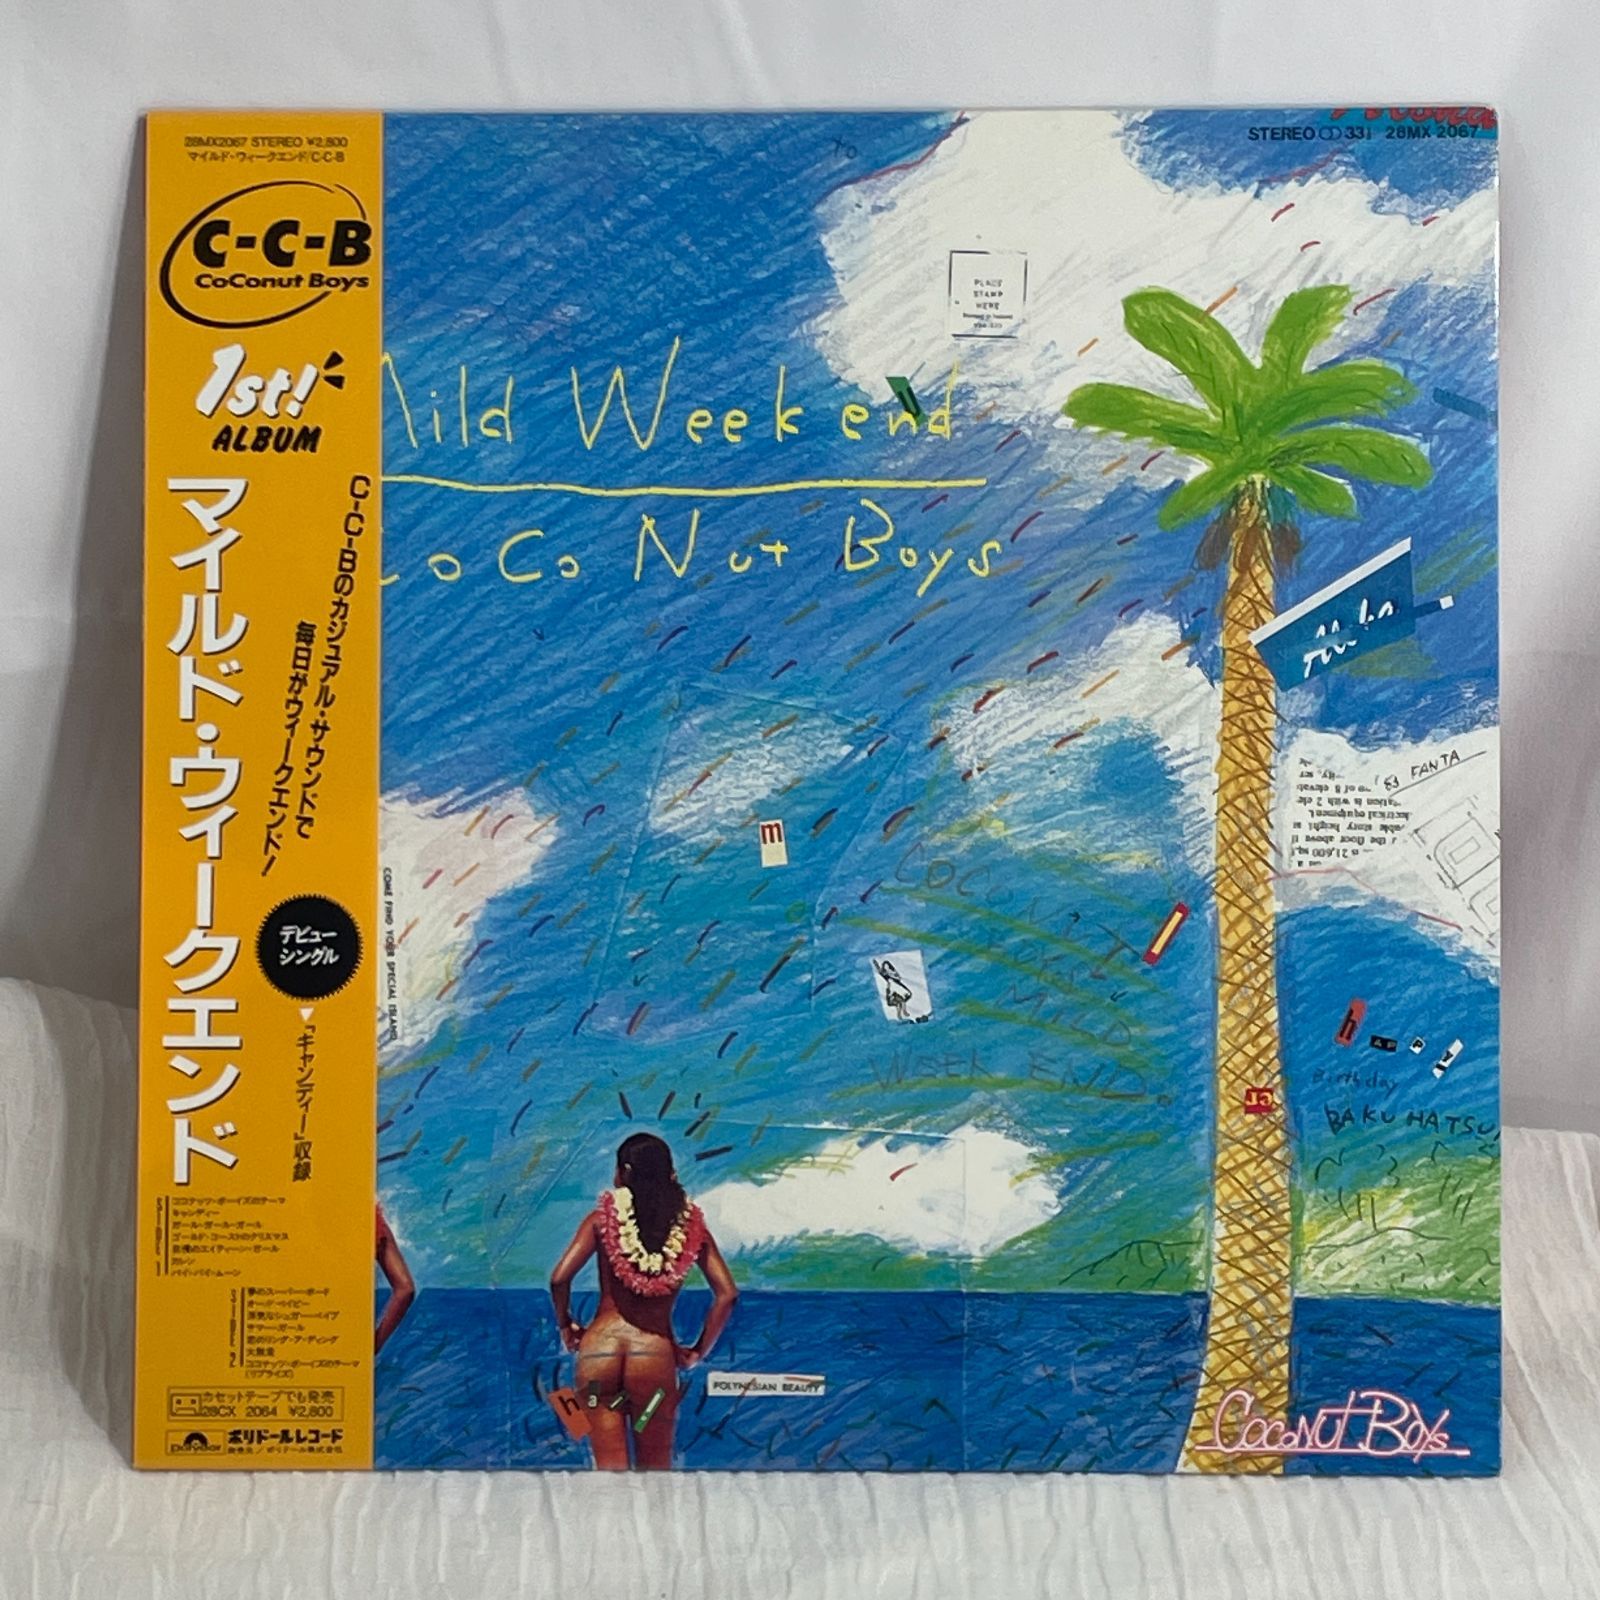 美品 レア ココナッツ・ボーイズ マイルド・ウィークエンド CCB C-C-B - CD